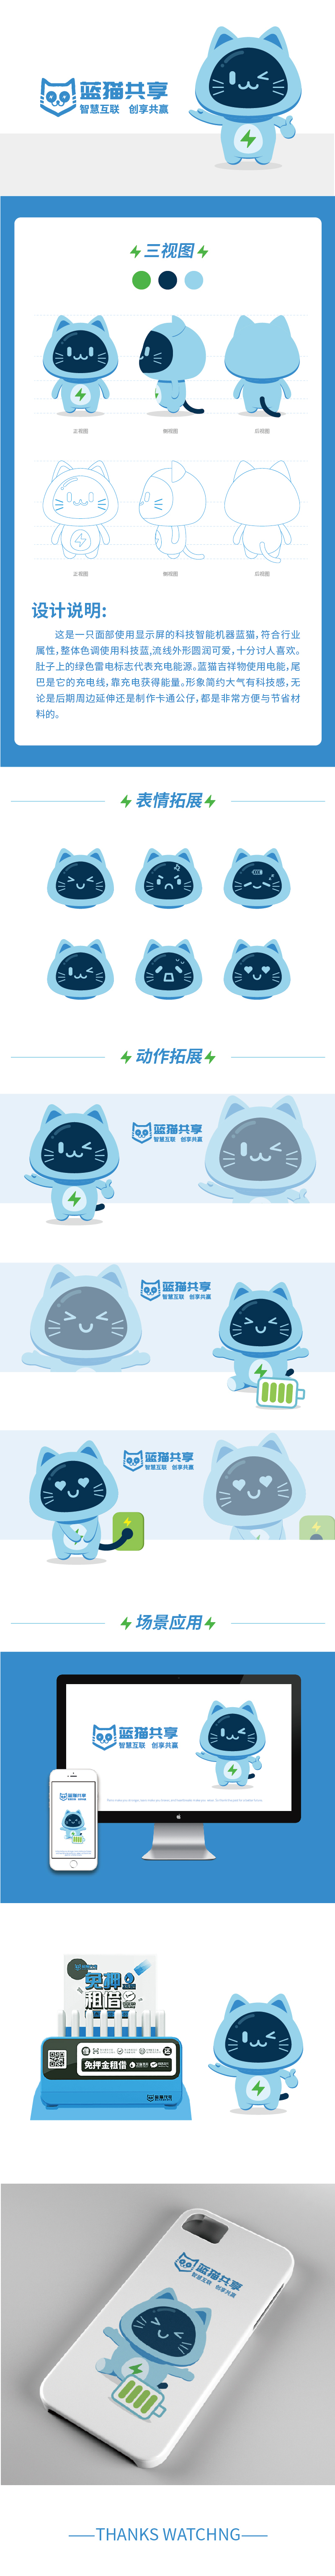 藍貓共享吉祥物設計圖0